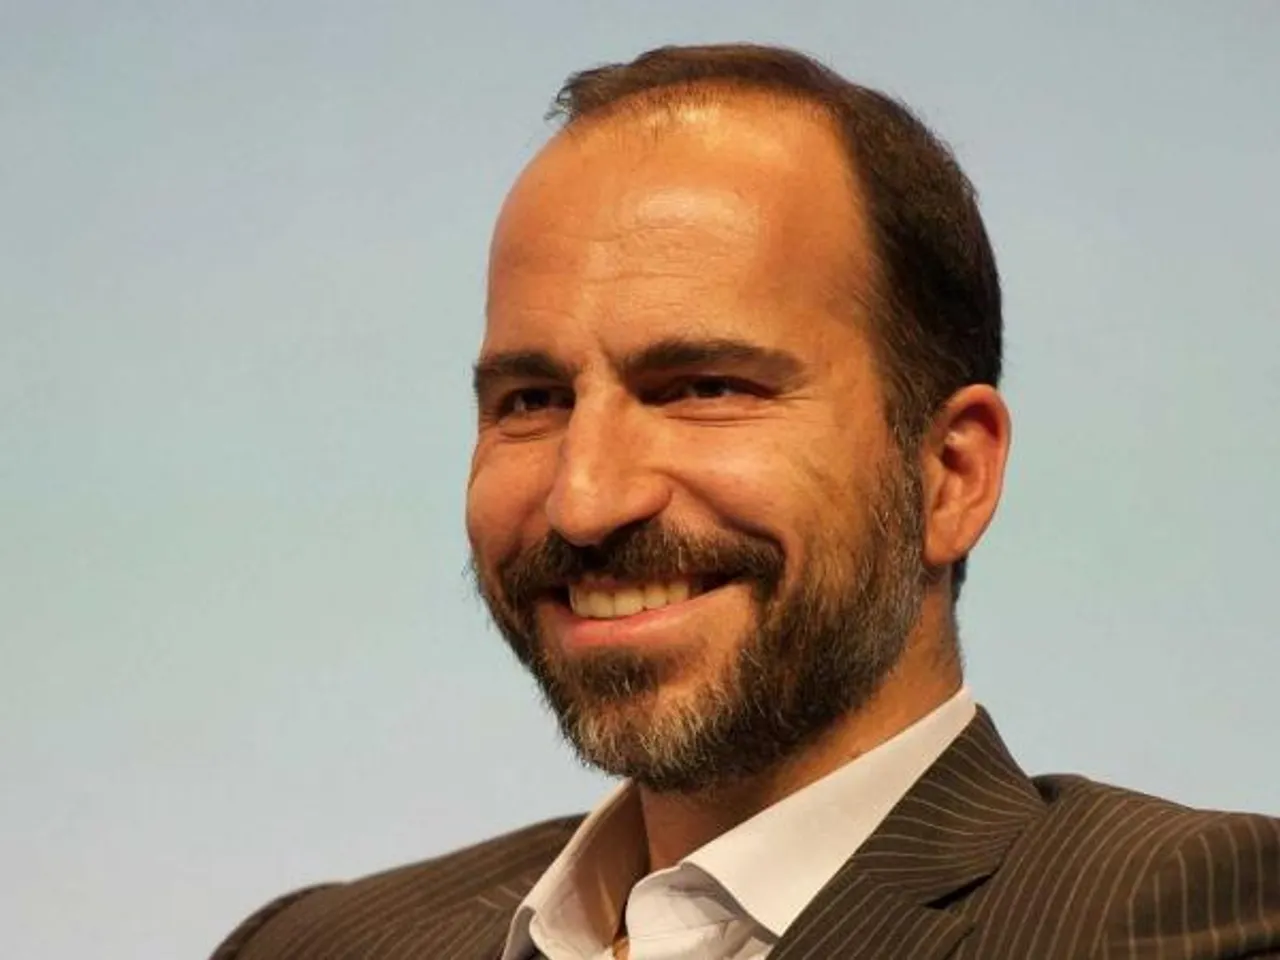 Expedia CEO Dara Khosrowshahi could be Uber's next boss